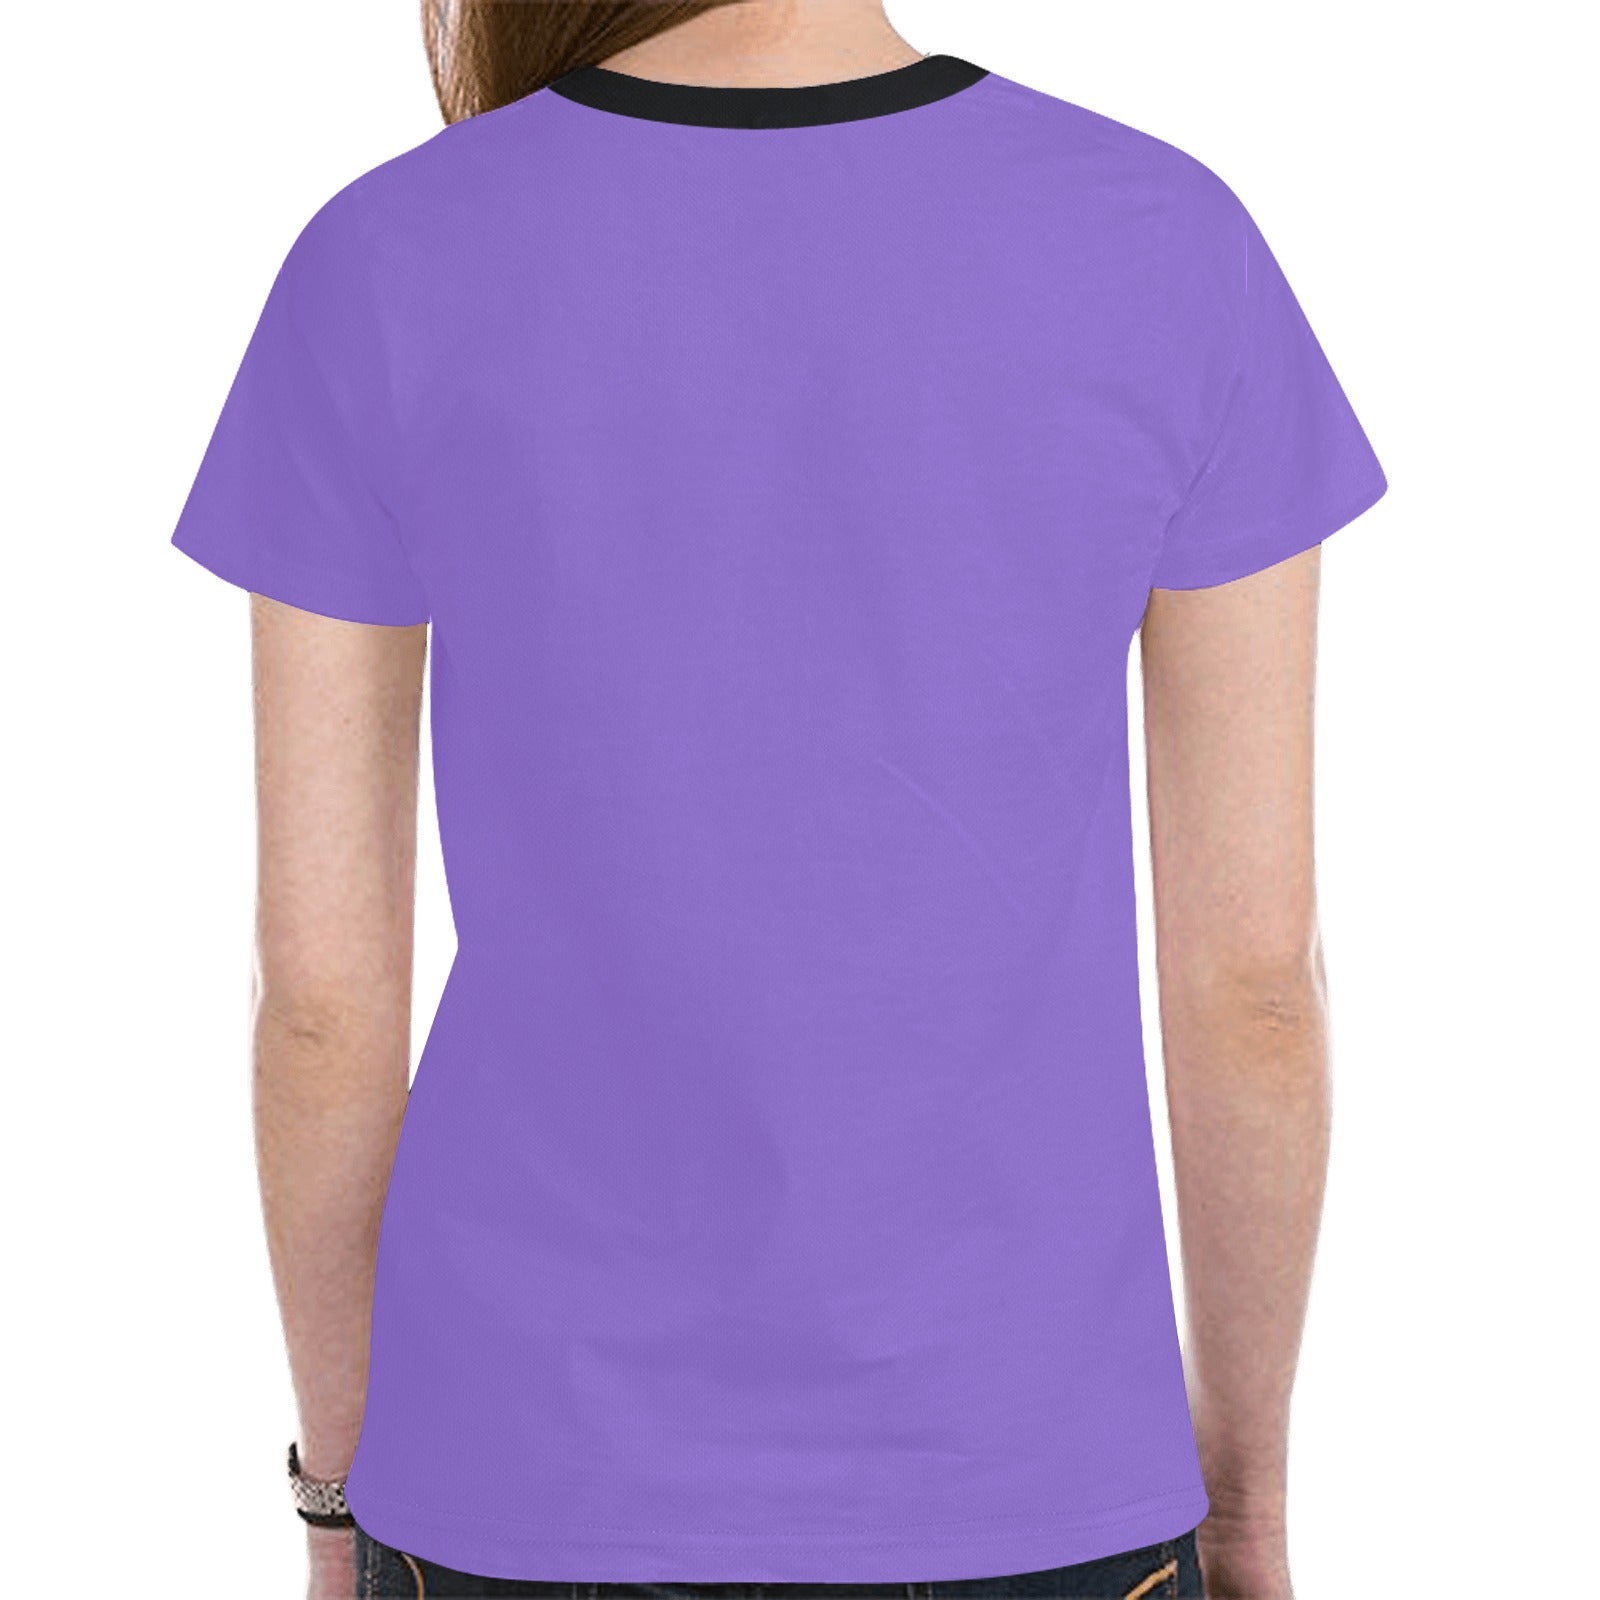 Elk Spirit Guide (Purple) T-shirt for Women